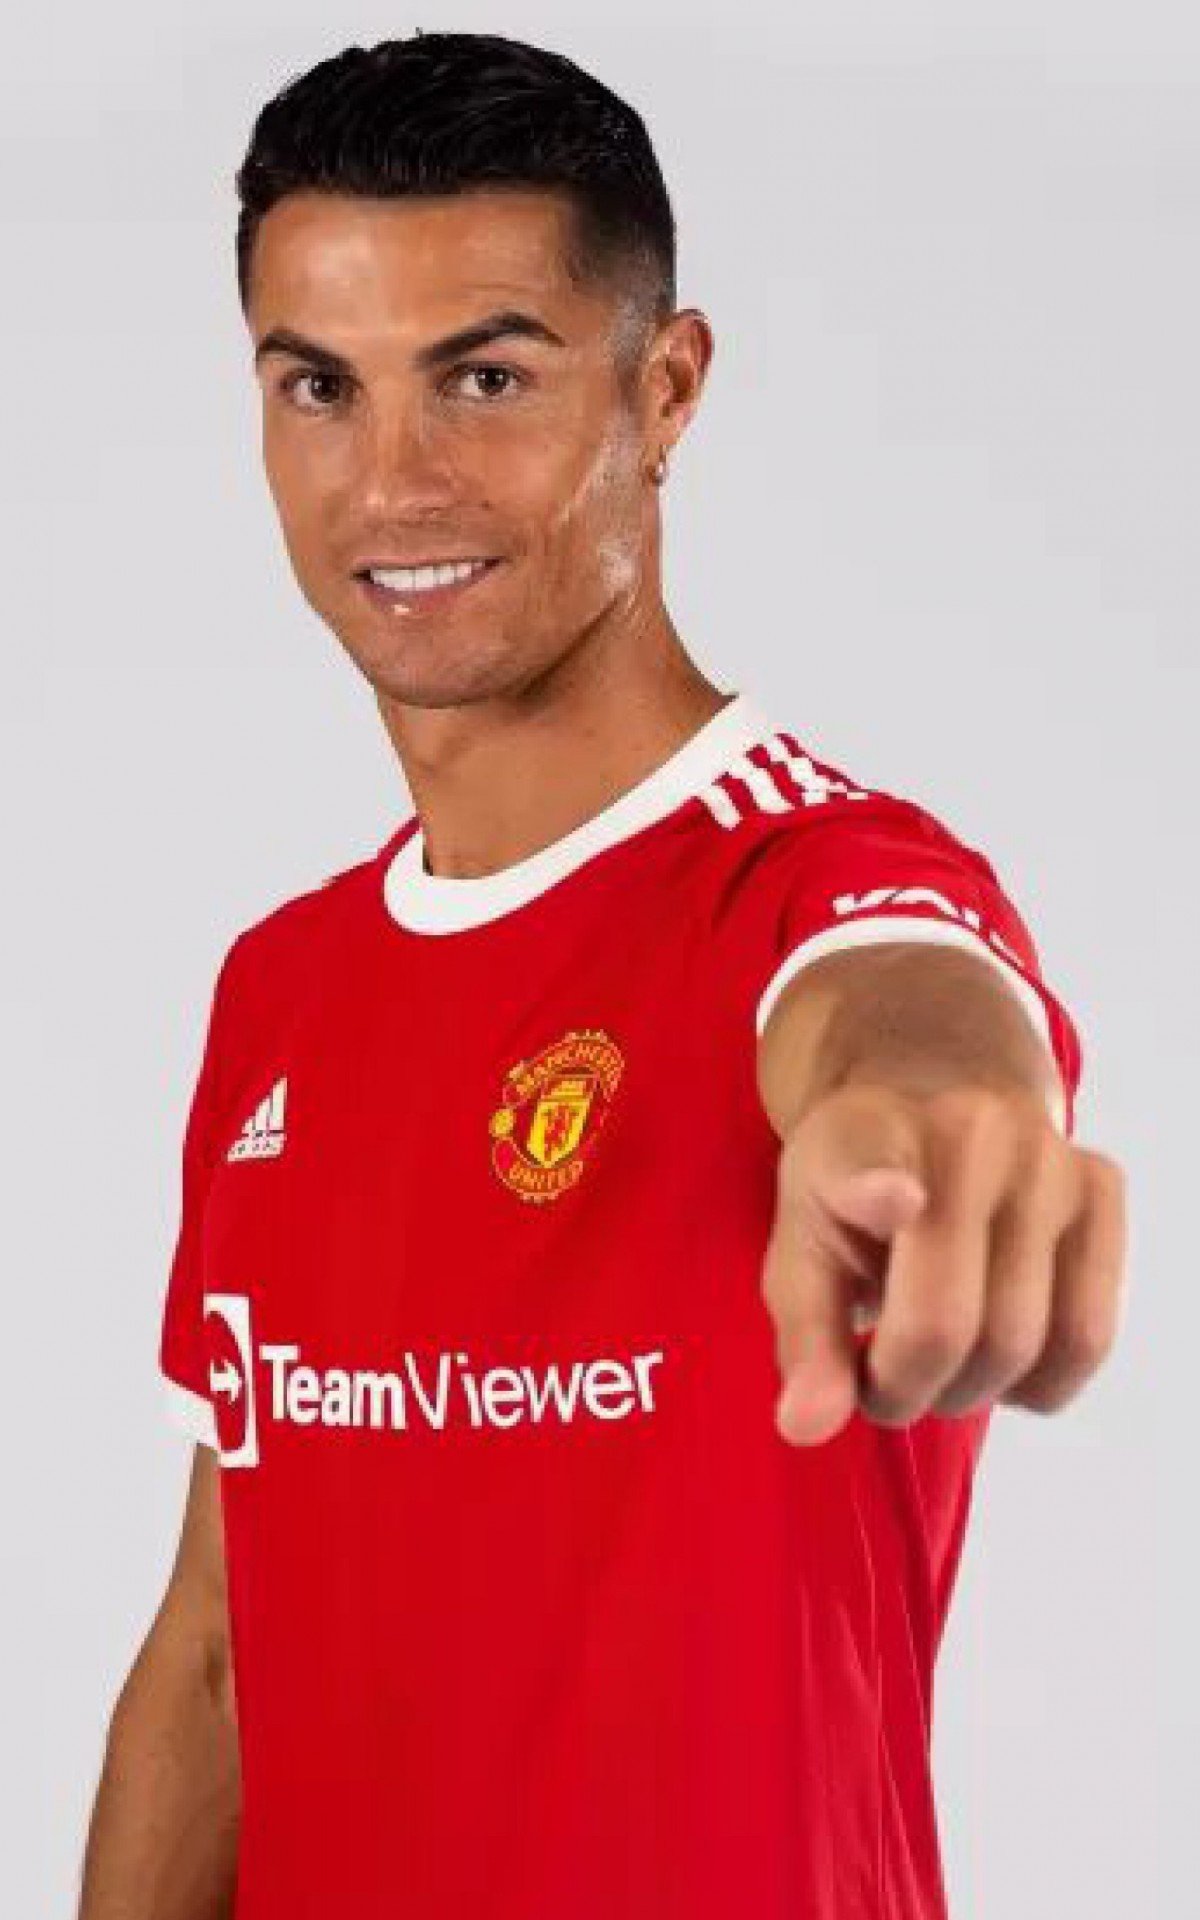 Manchester United registra Cristiano Ronaldo com uniforme e destaca